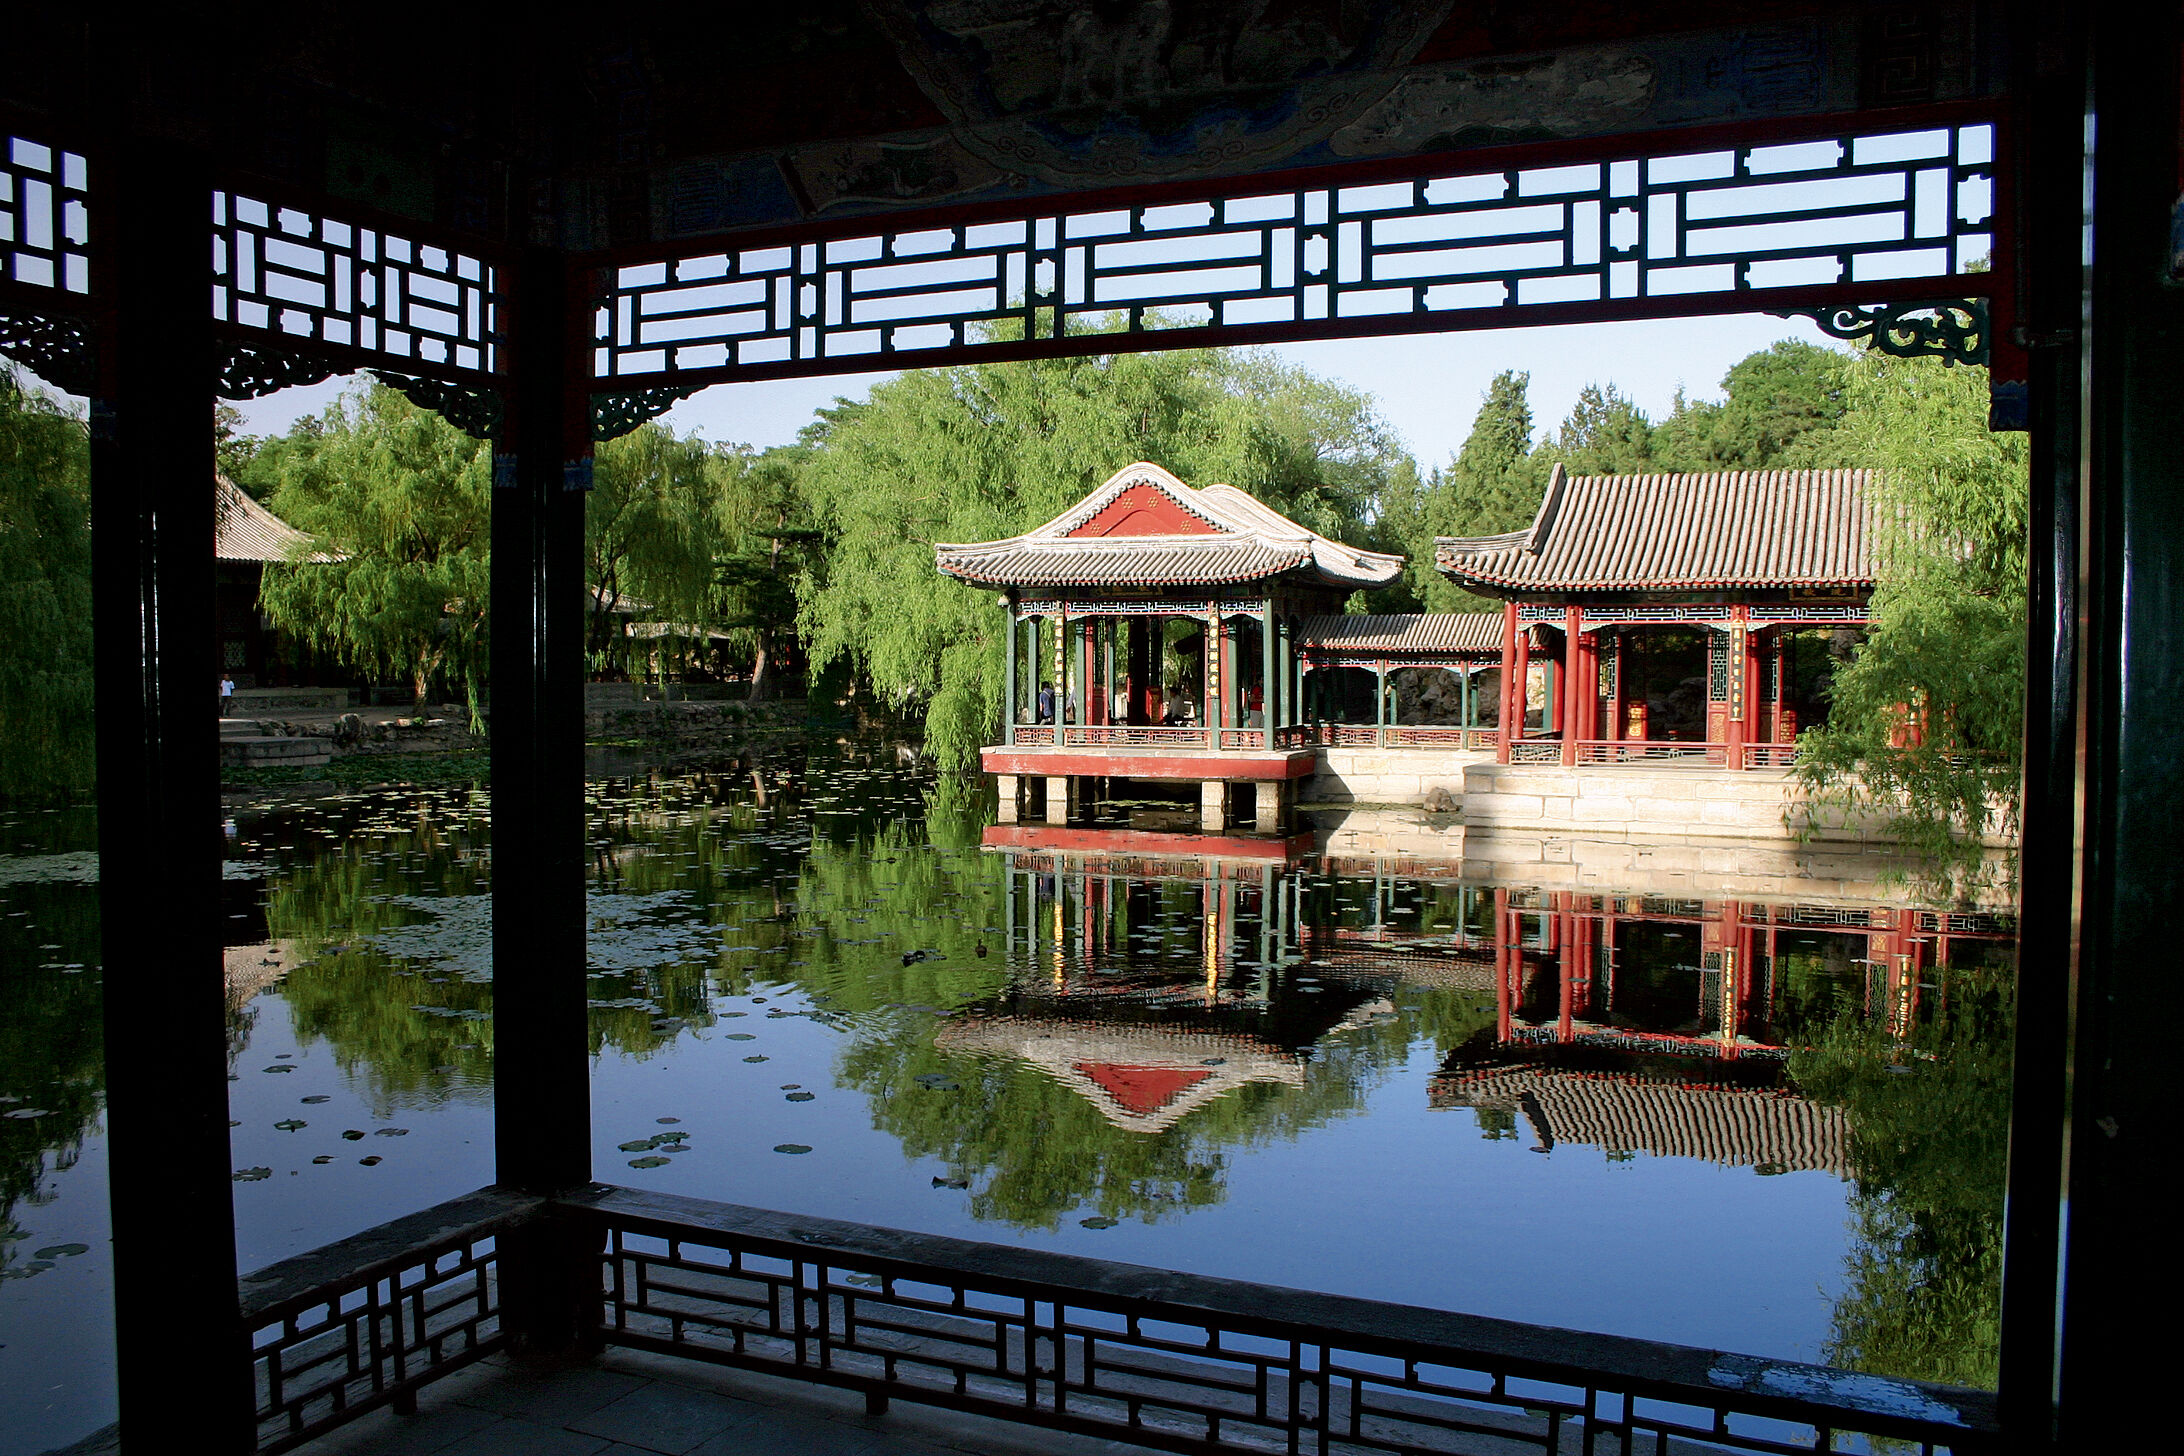 颐和园是遭列强洗劫后重建的，前身为乾隆所建清漪园